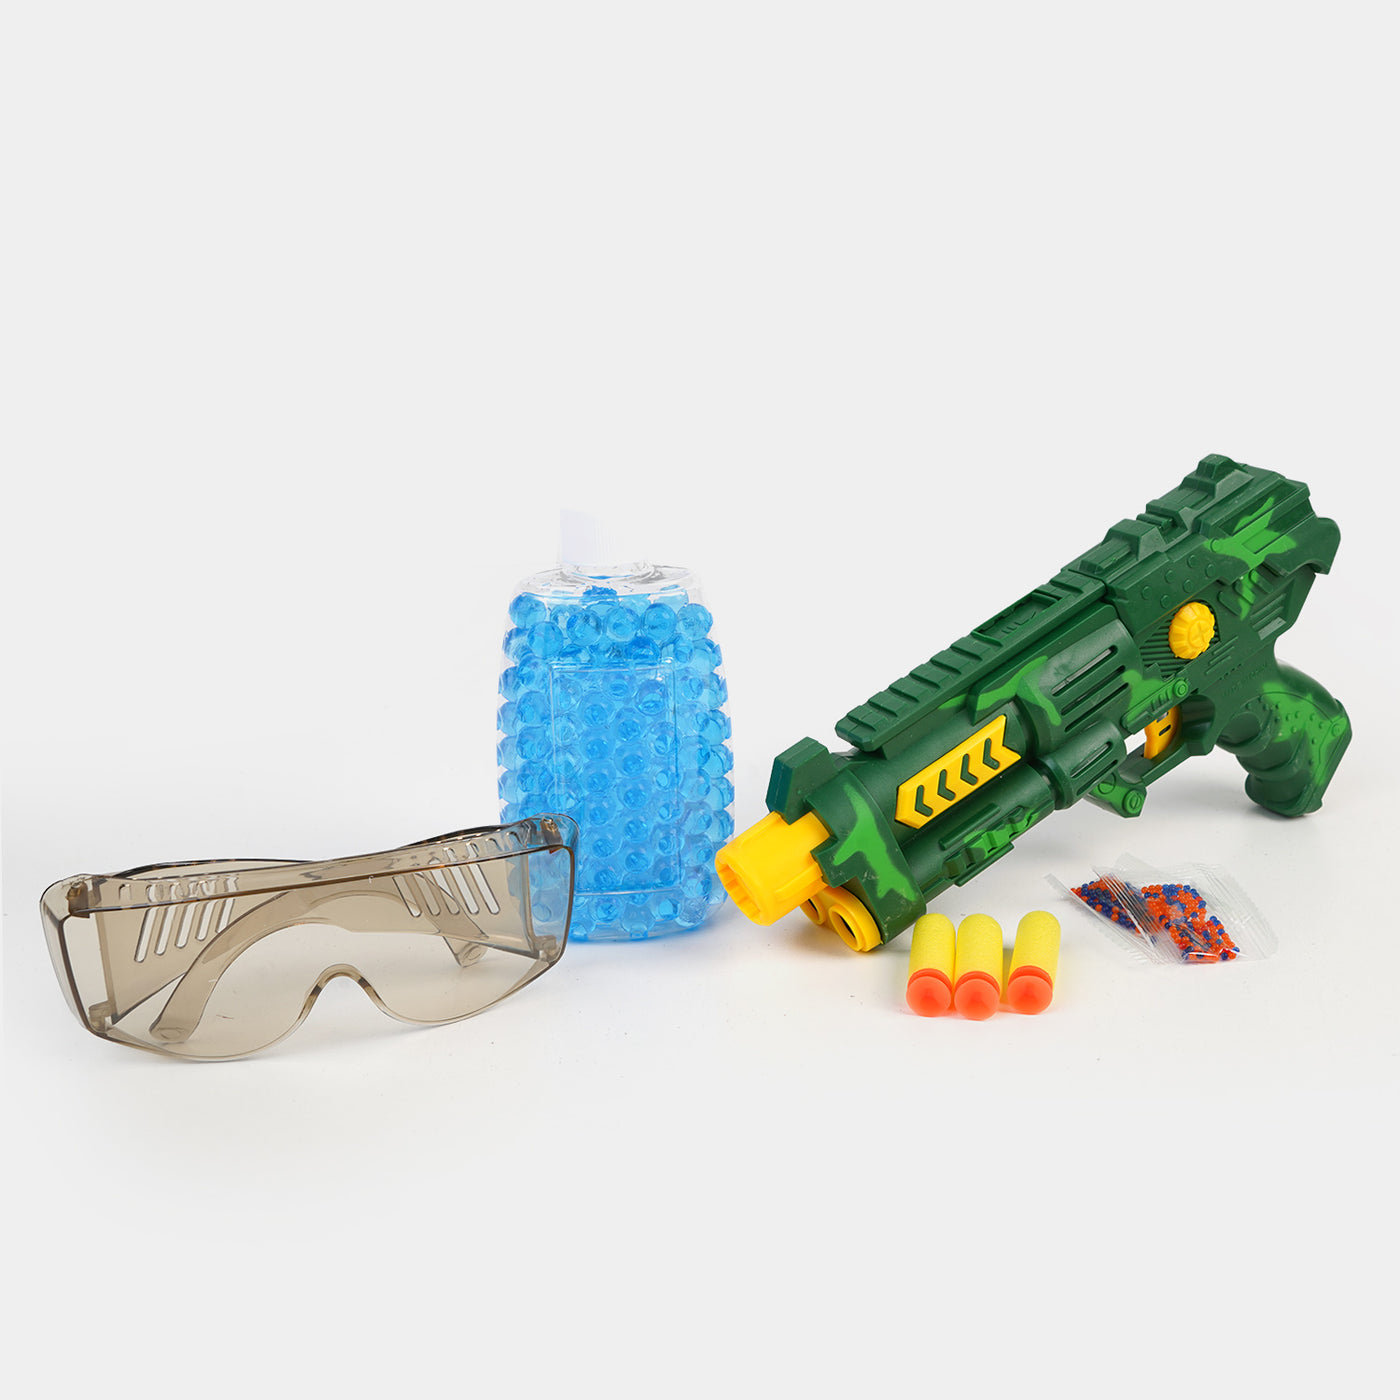 Eva Soft Blaster & Crystal Target Toy For Kids